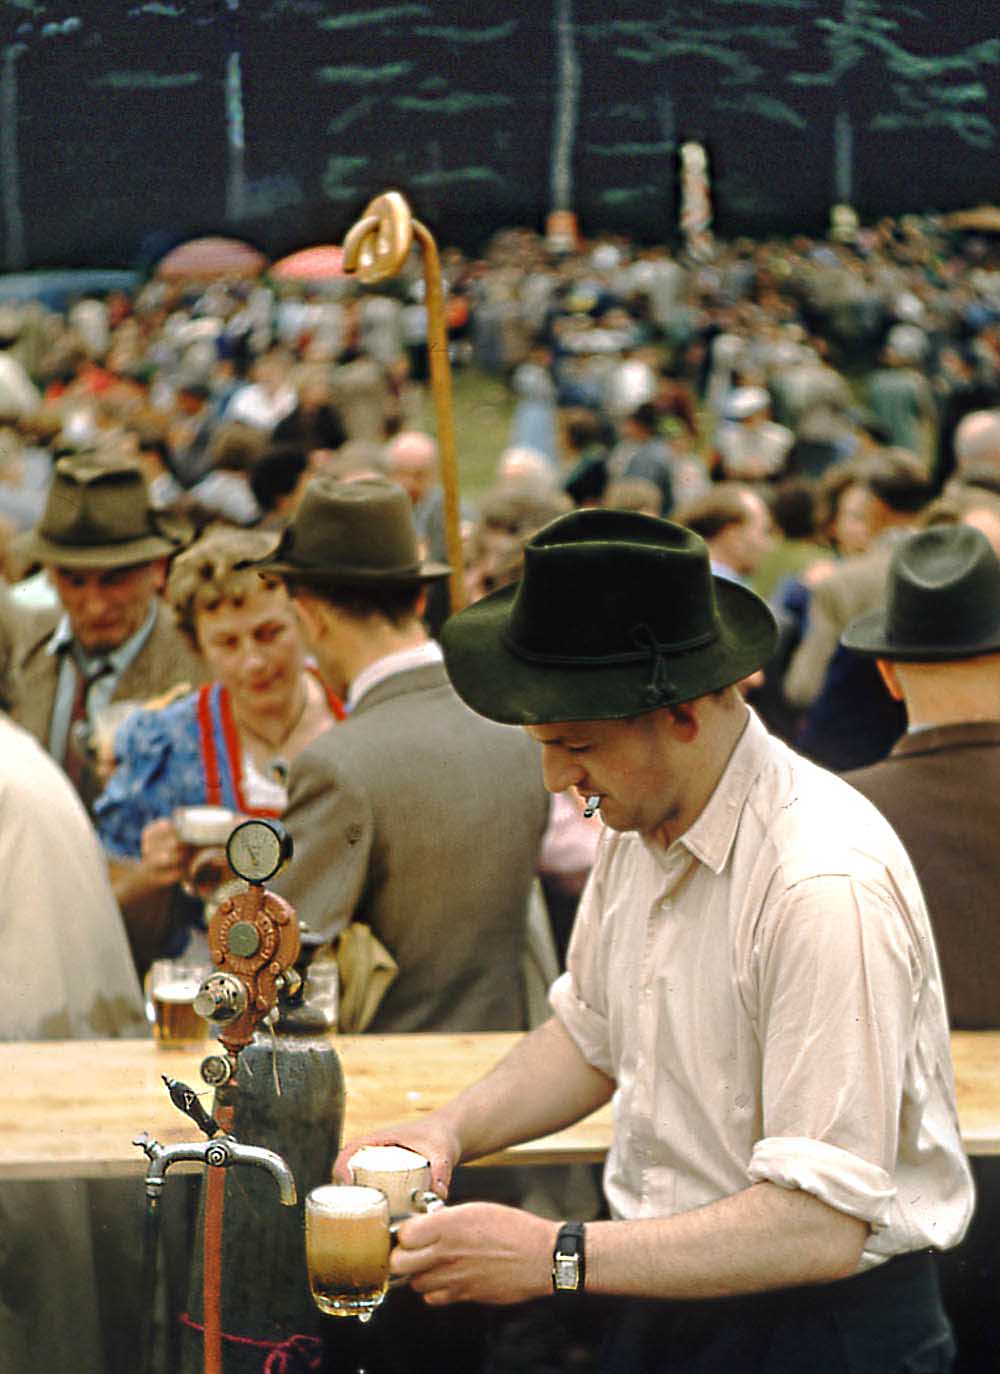 1956-Fruhstucksplatz-Beer-AusschanksThekaDay1-1000